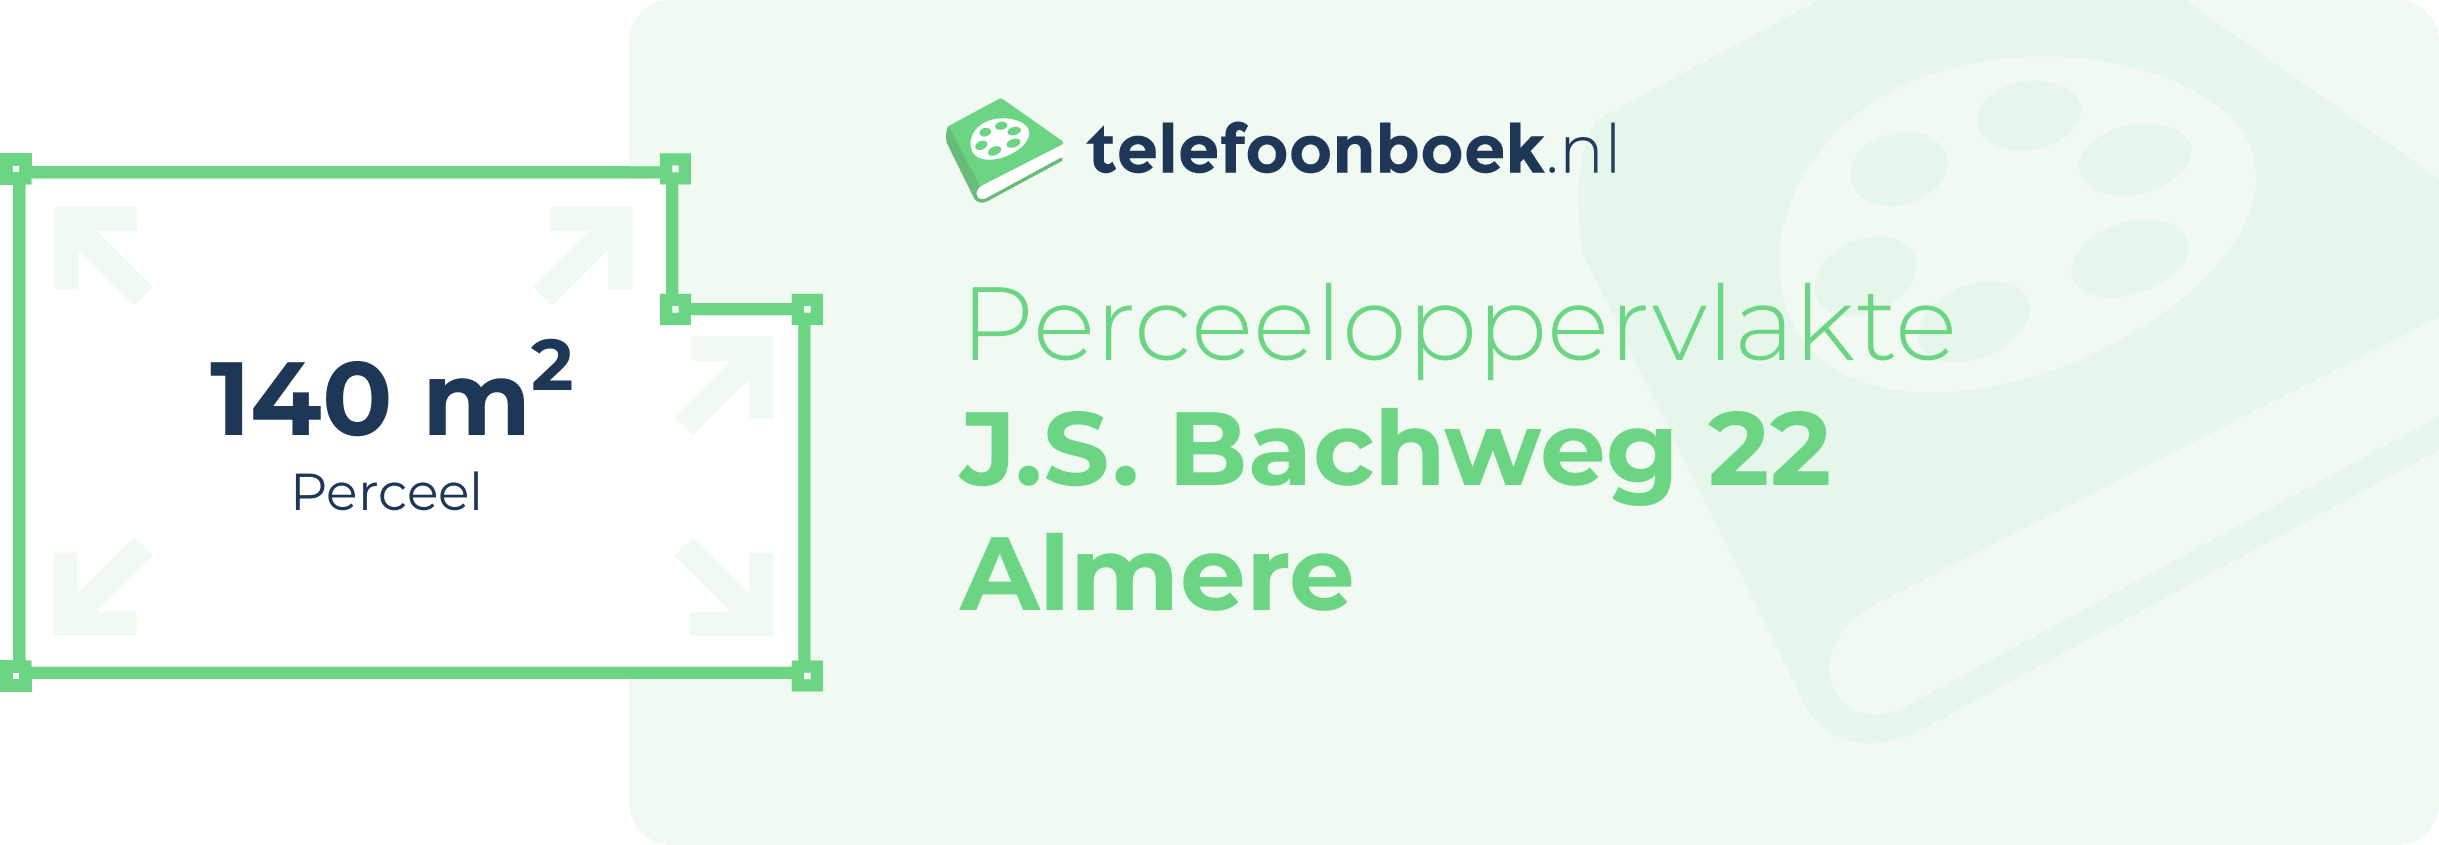 Perceeloppervlakte J.S. Bachweg 22 Almere